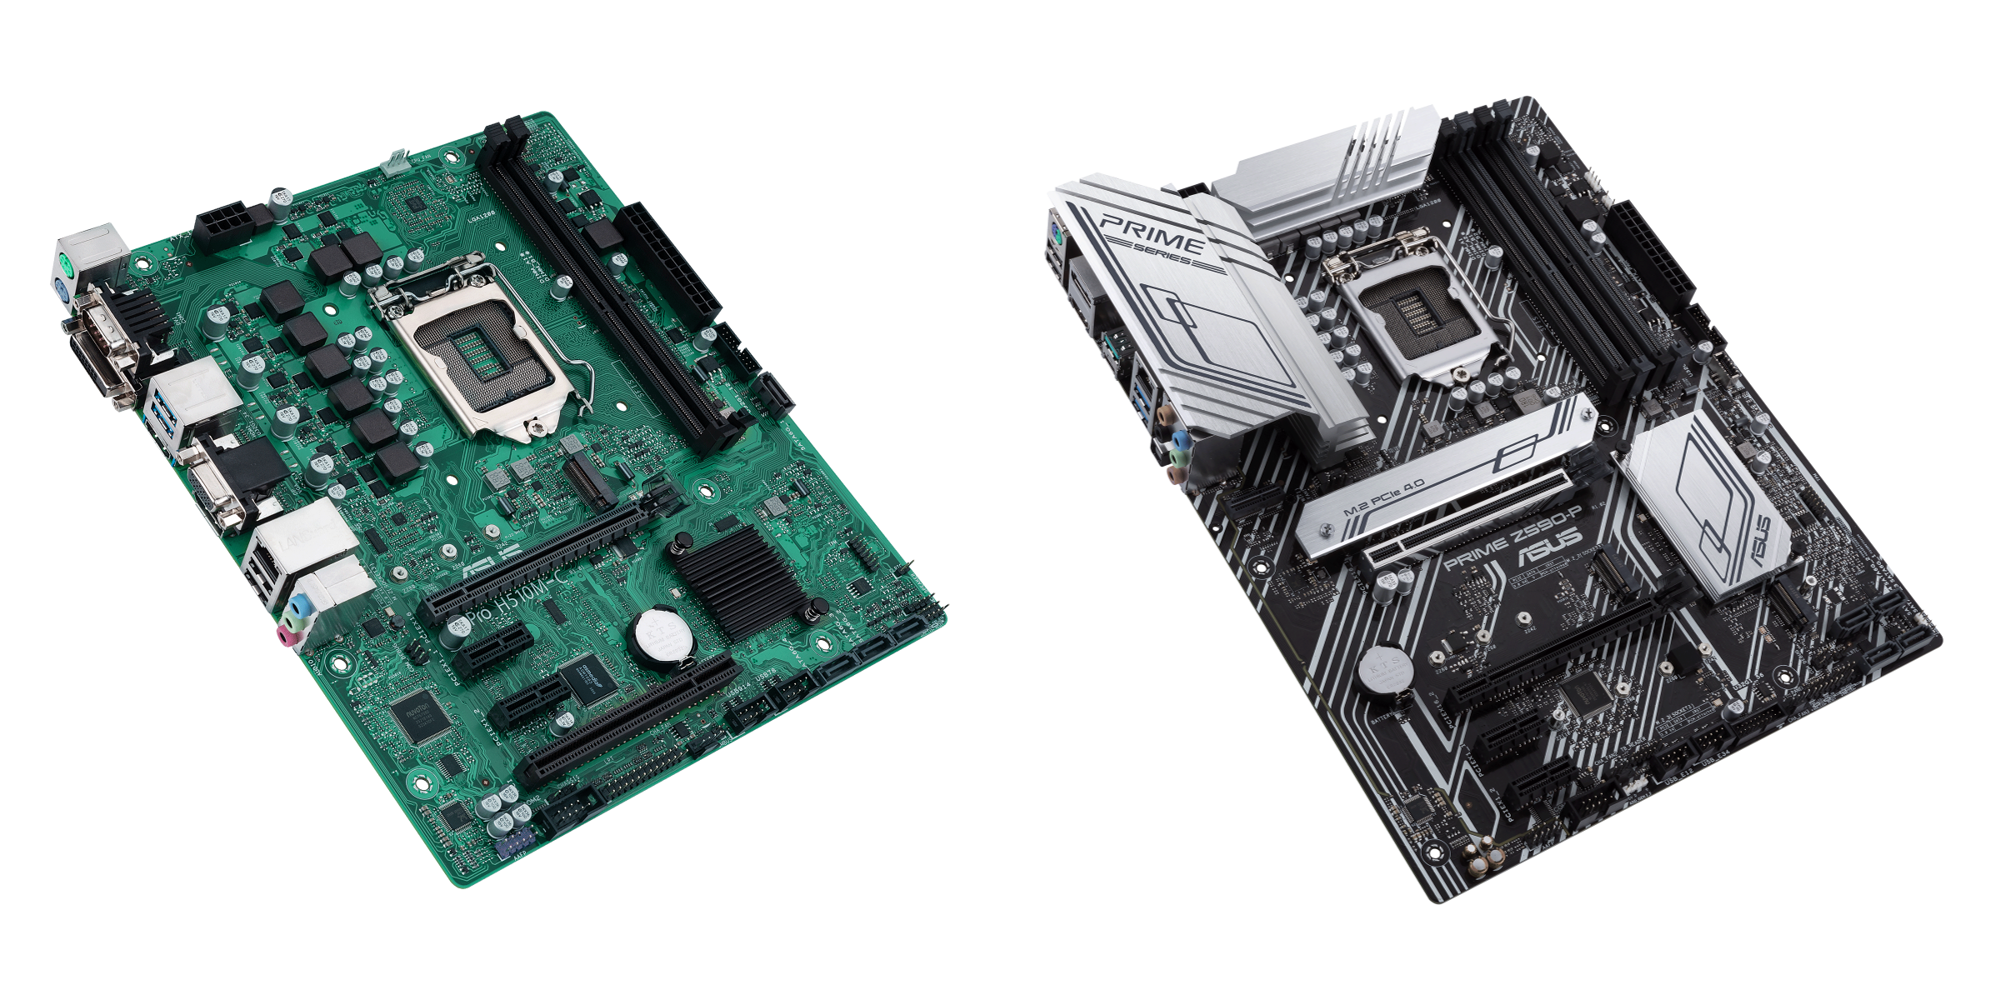 Micro-ATX-Board Pro H510M (left) and ATX-Board PRIME Z590-P (right) are developed to unleash the full potential of 11th Generation Intel® Core™ processors.